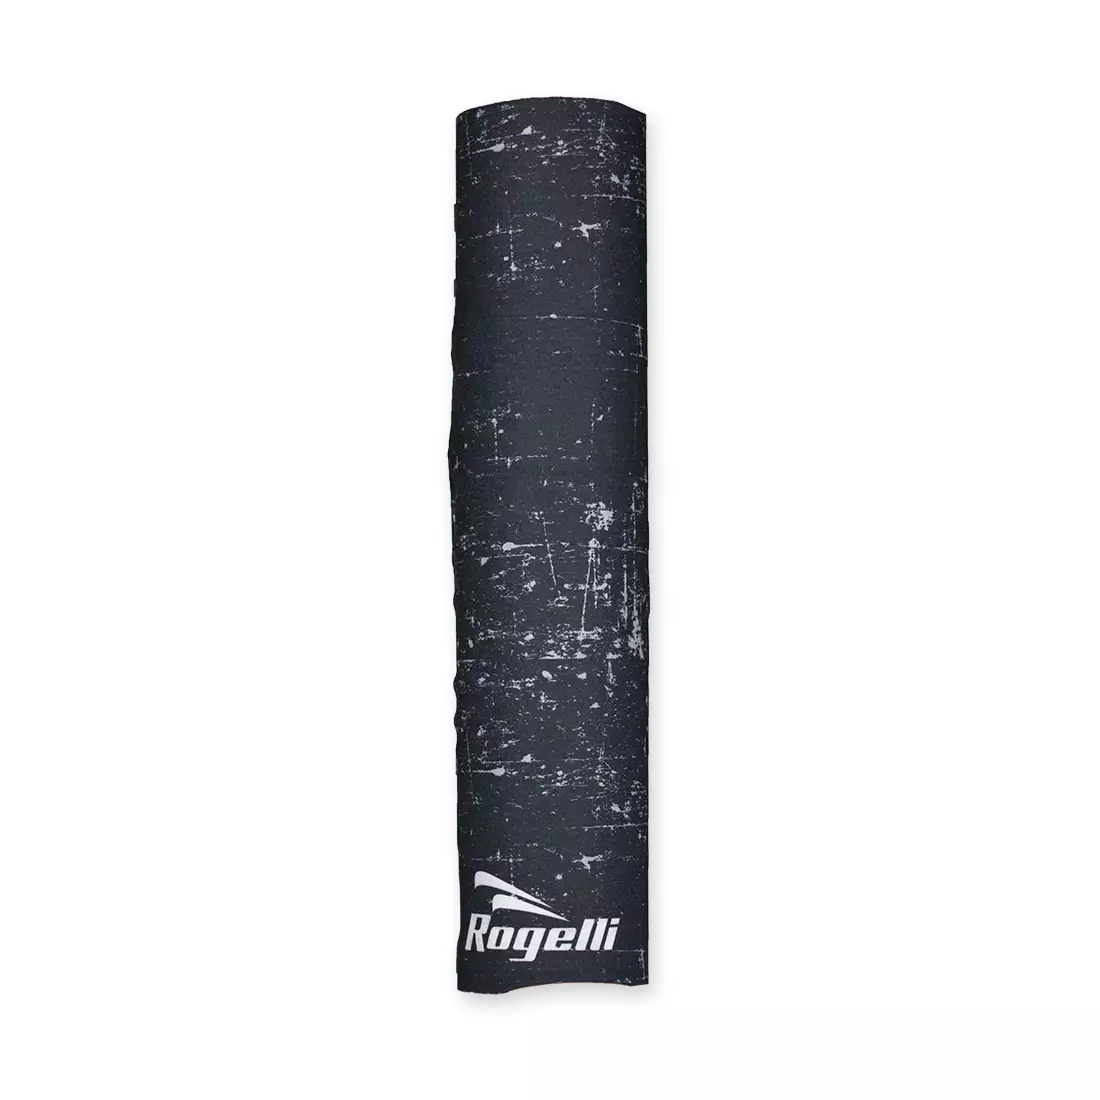 ROGELLI 009.109 SS18 multifunkční šátek, černý